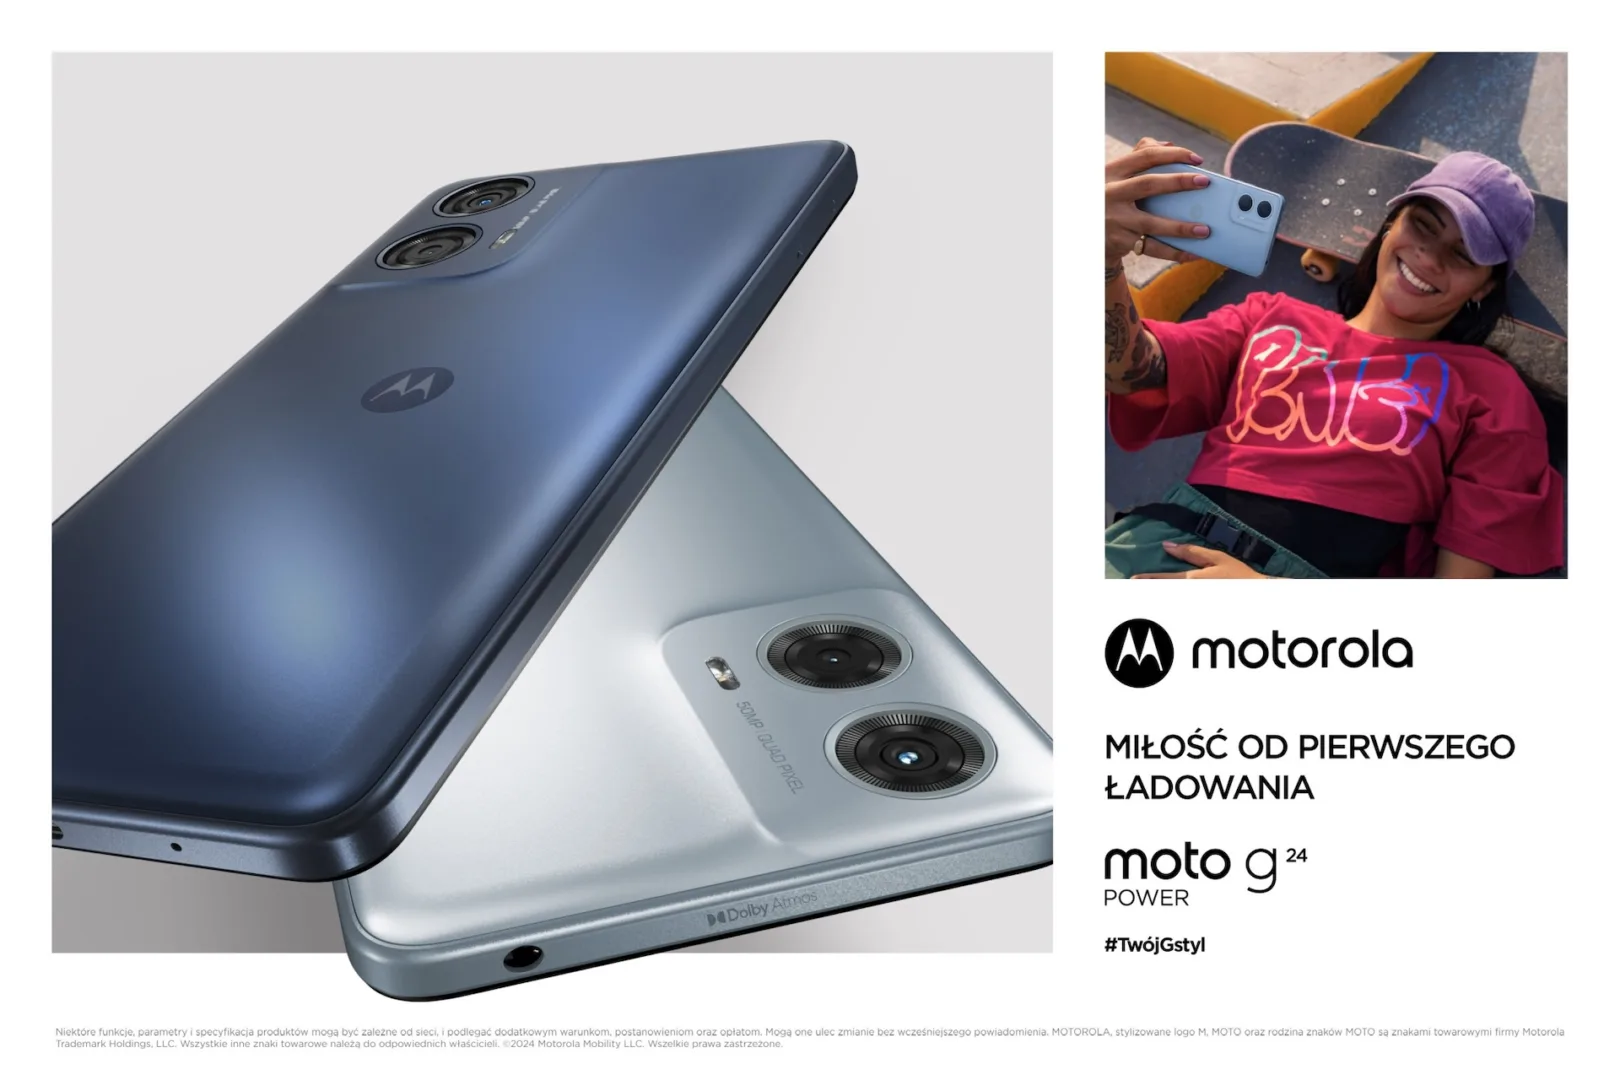 Nowe tanie smartfony Motorola moto g24 i moto g24 power.